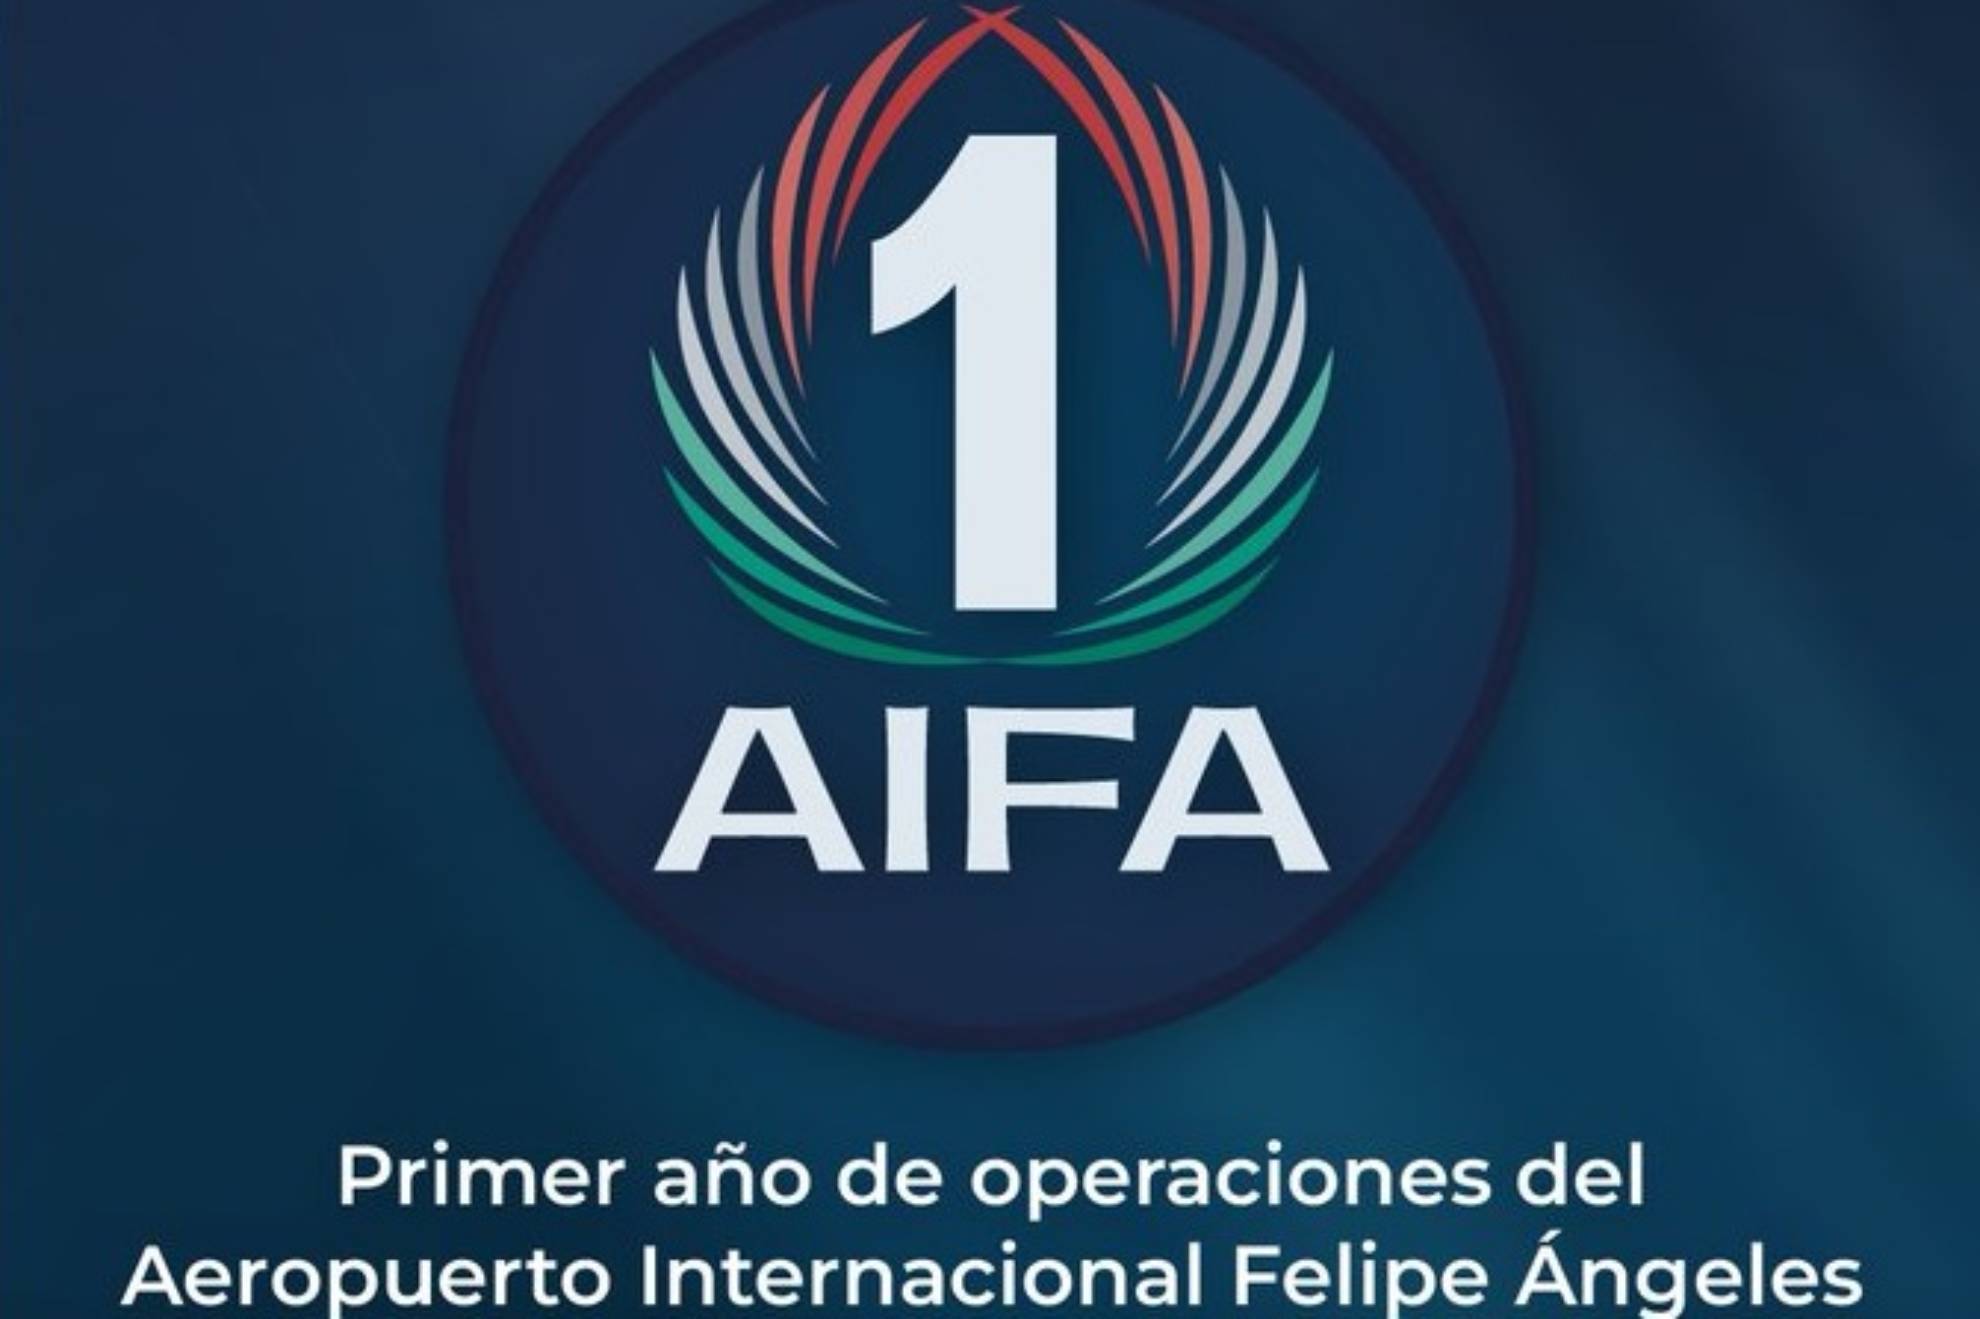 El AIFA estrenó himno como parte de la celebración de su primer aniversario